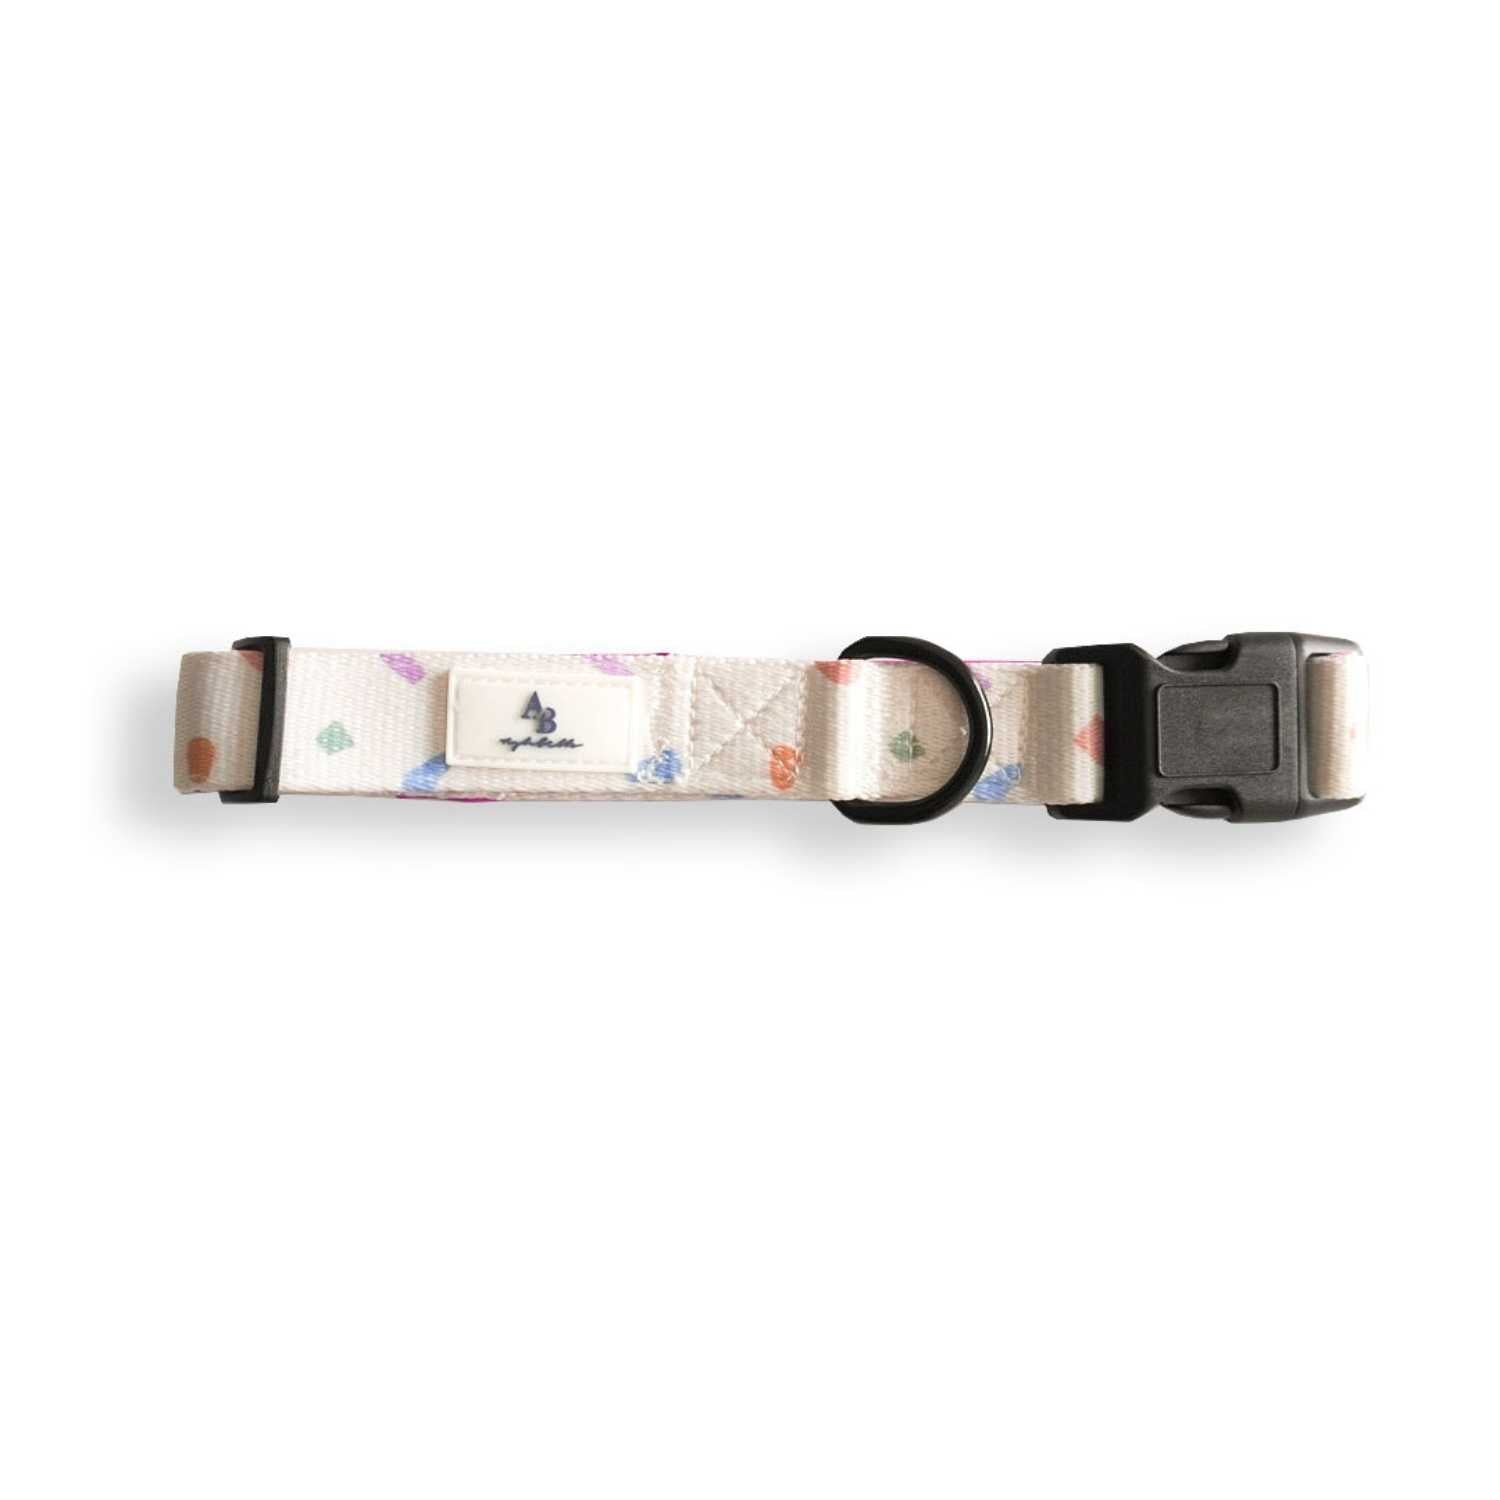 Aylabella Co. - Confetti Dreams Collar - Dog Accessories (4 Sizes)